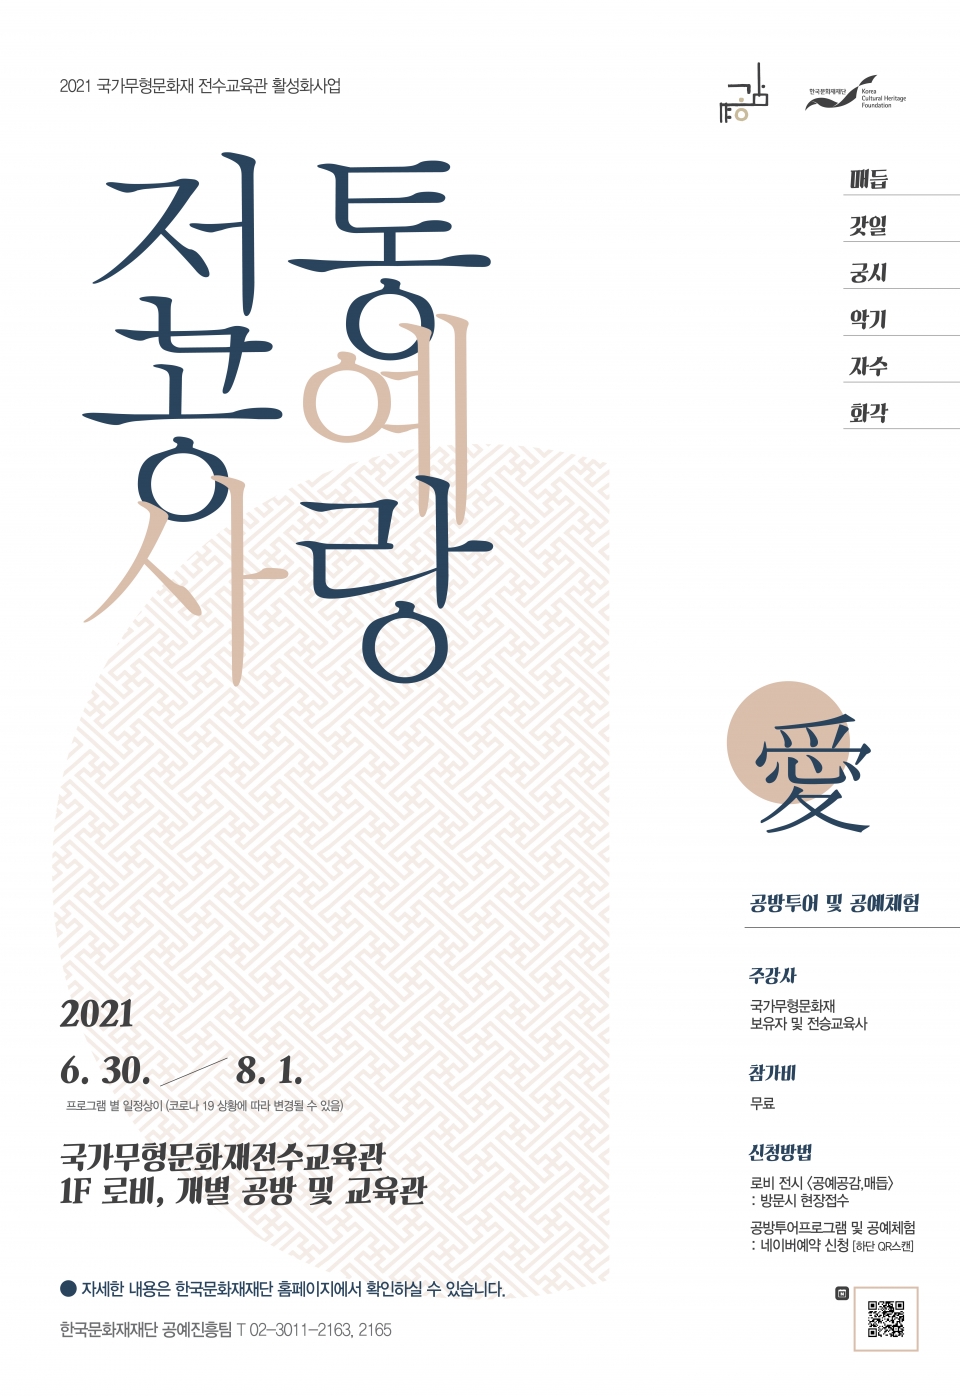 2021 전통공예사랑愛 프로그램 포스터 / 사진 = 한국문화재재단 제공